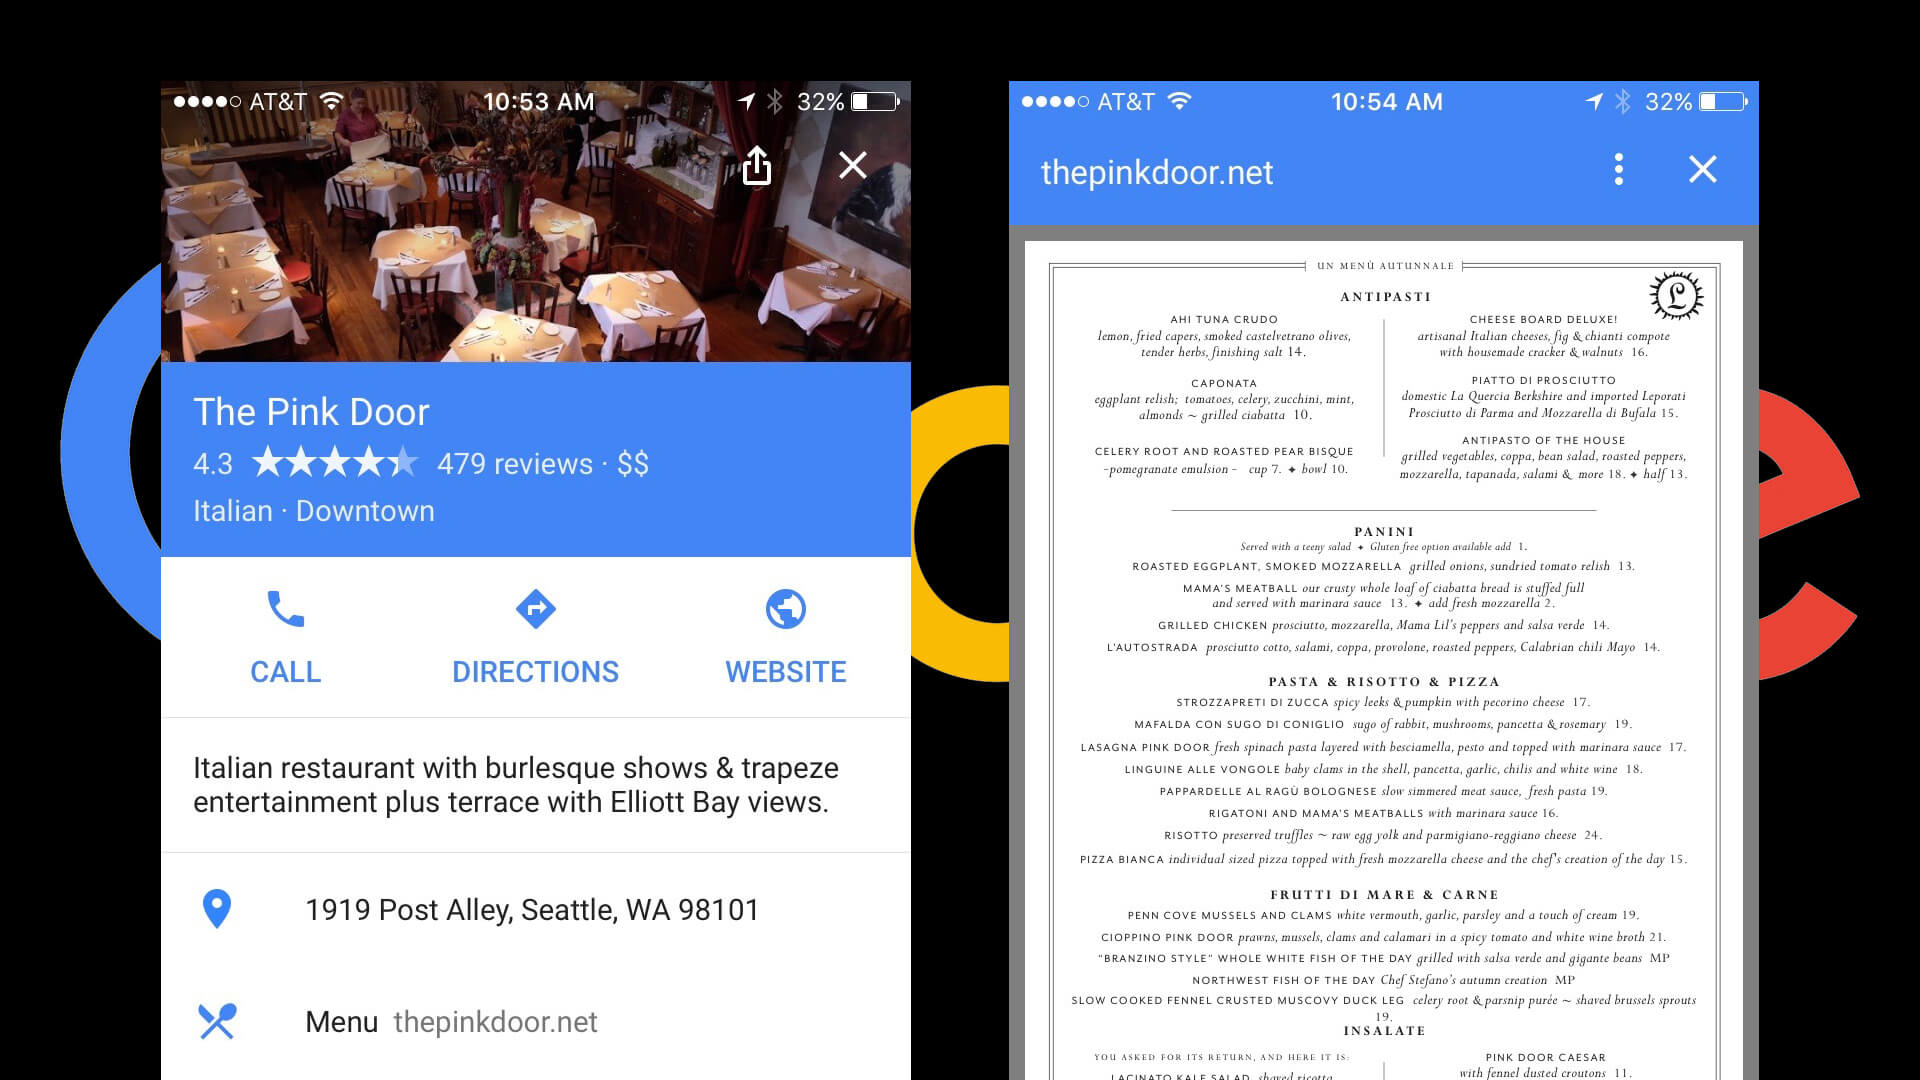 google-ios-app-restaurant-menus-1920